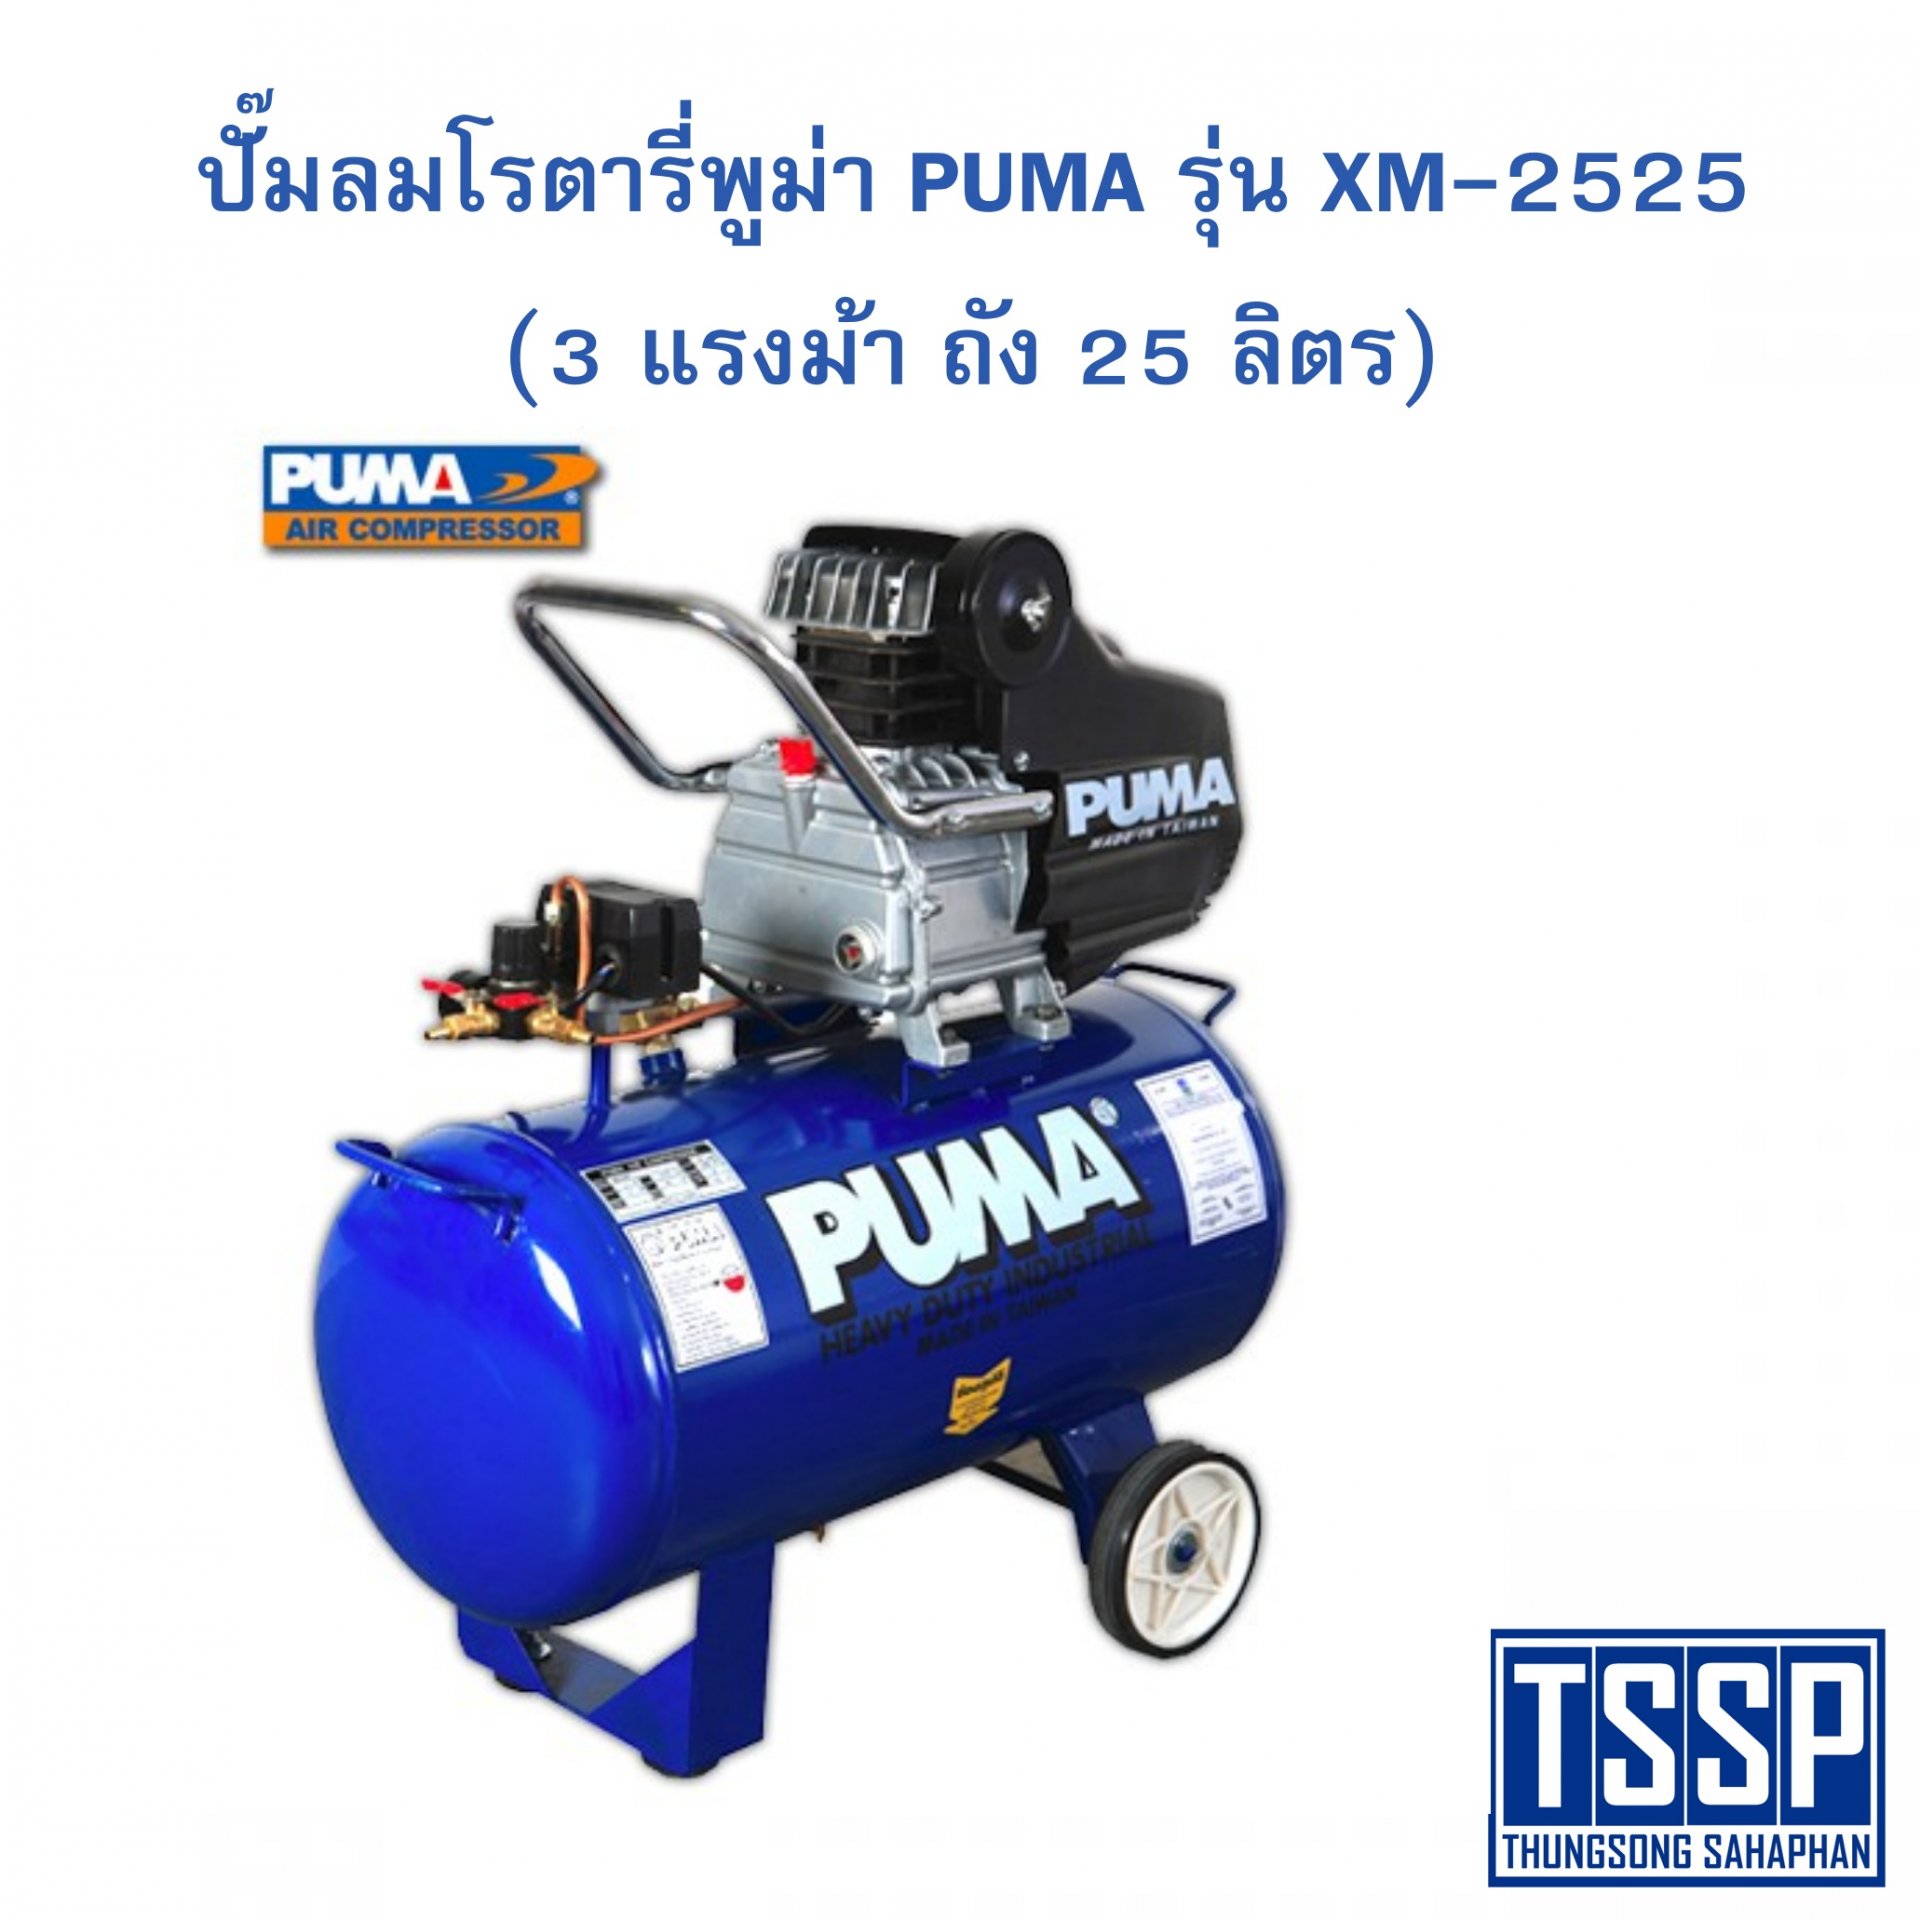 ปั๊มลมโรตารี่พูม่า PUMA รุ่น XM-2525 (3 แรงม้า ถัง 25 ลิตร)